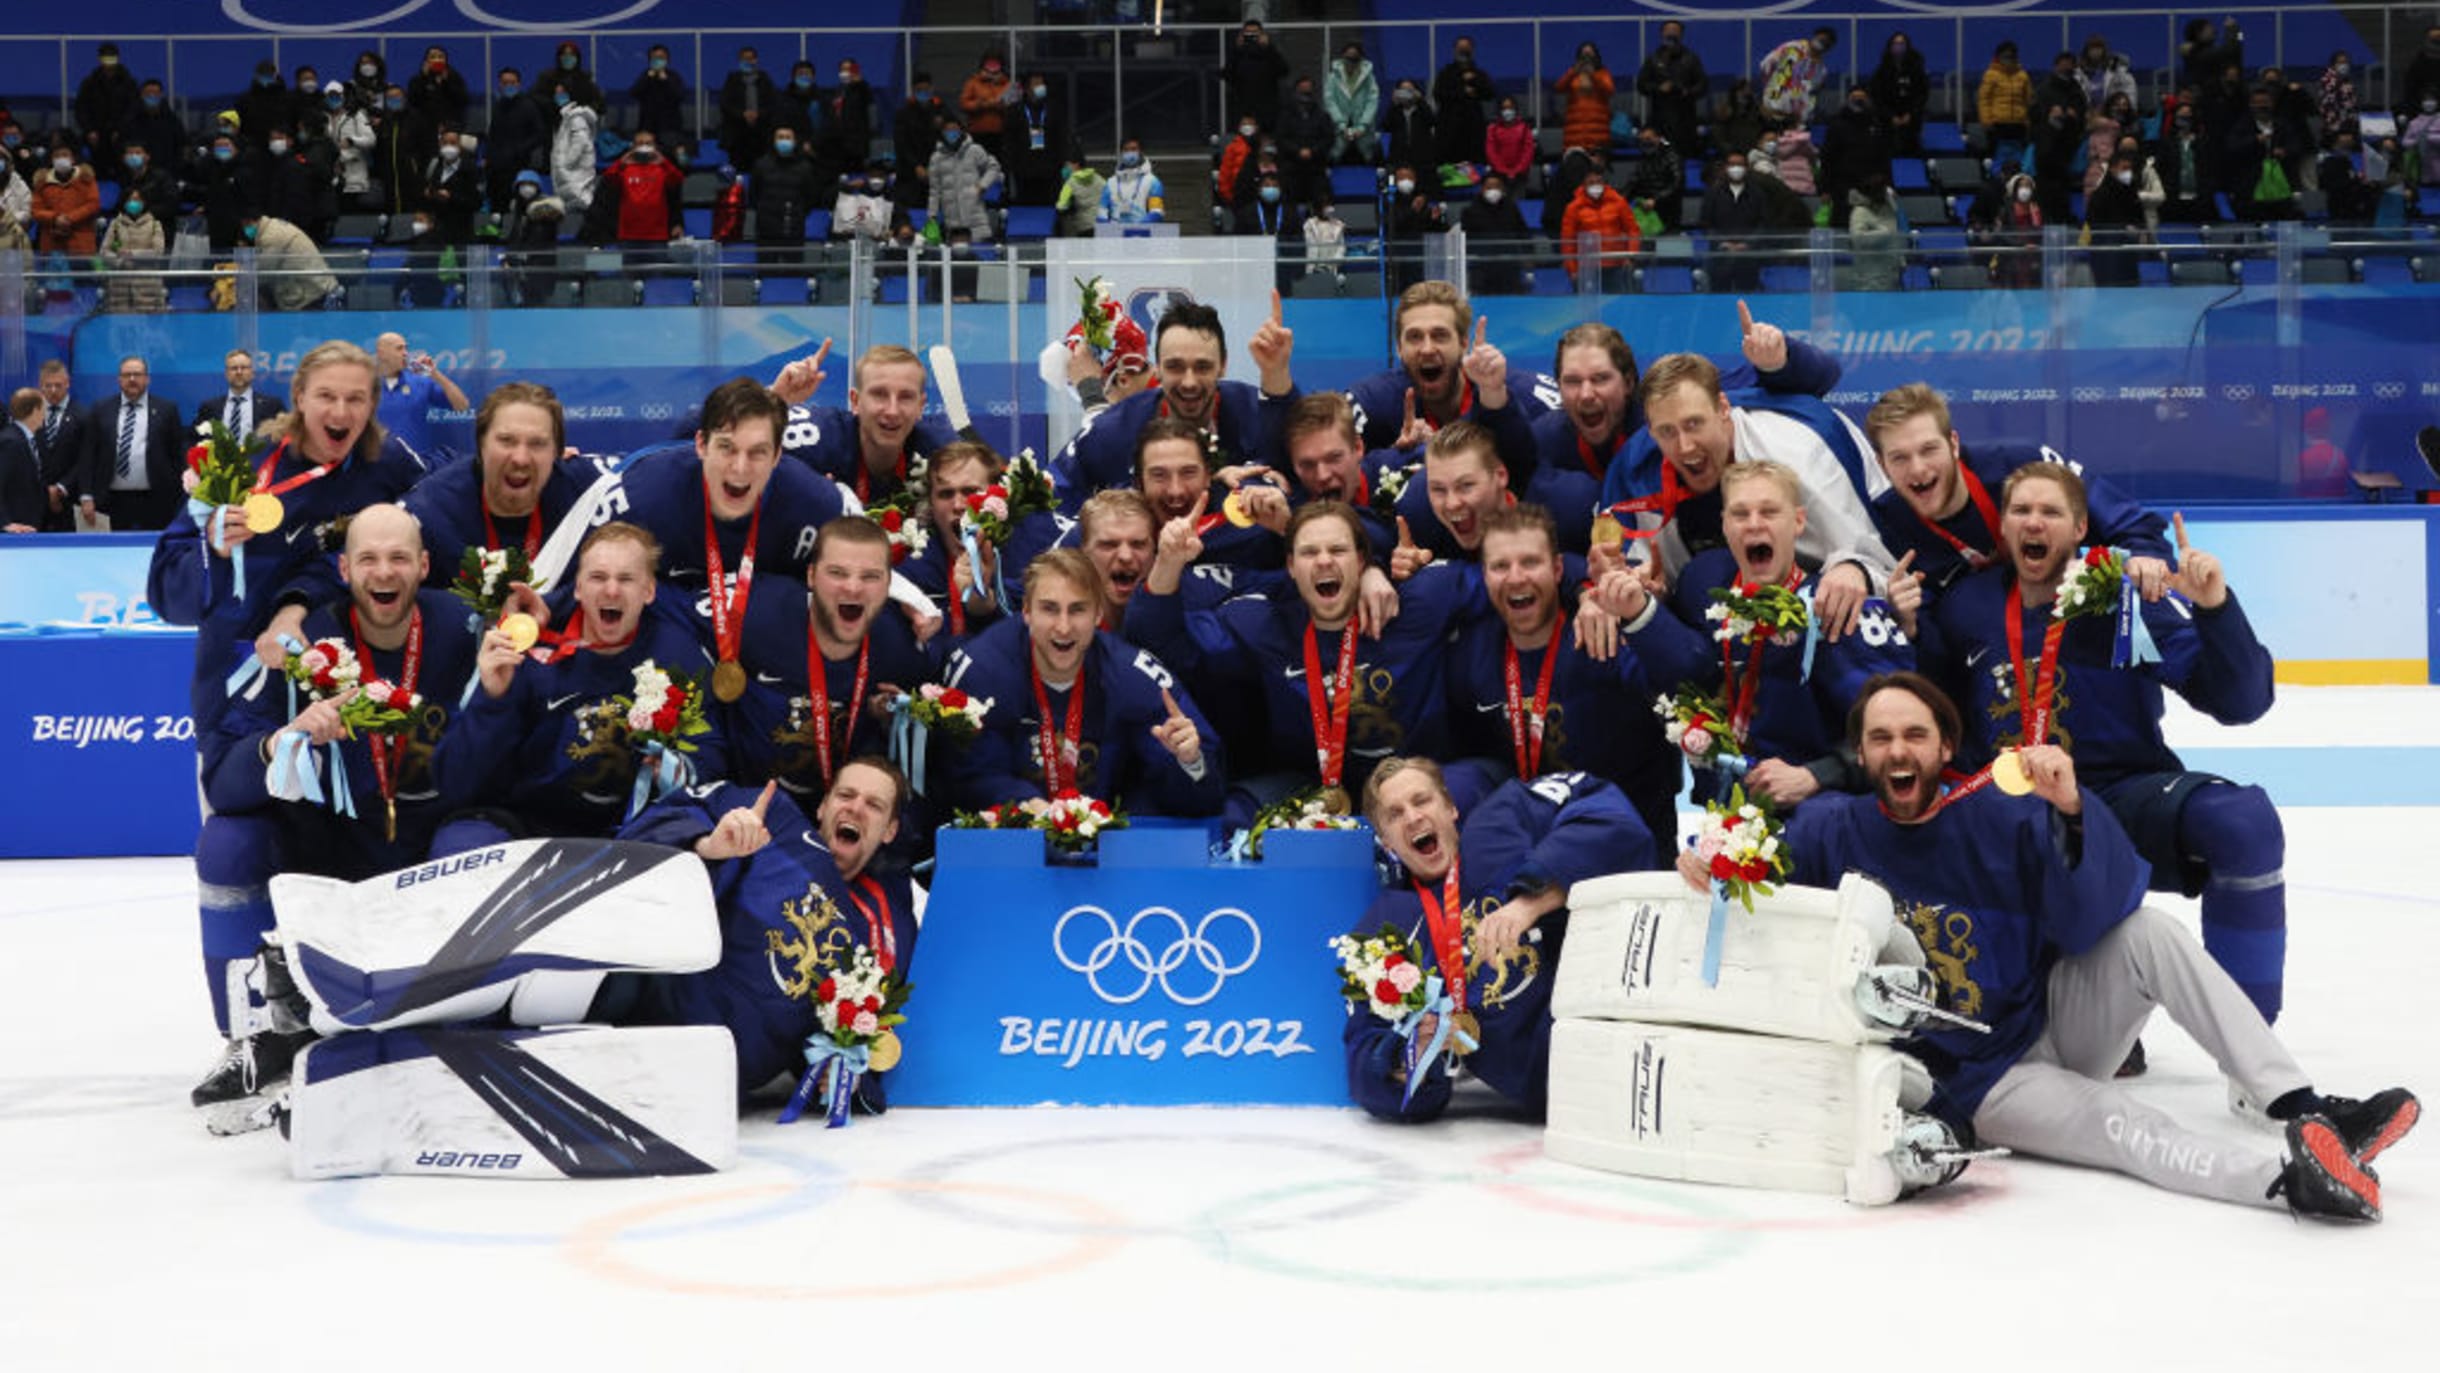 メダル決定】フィンランドが金メダル! 北京2022アイスホッケー男子